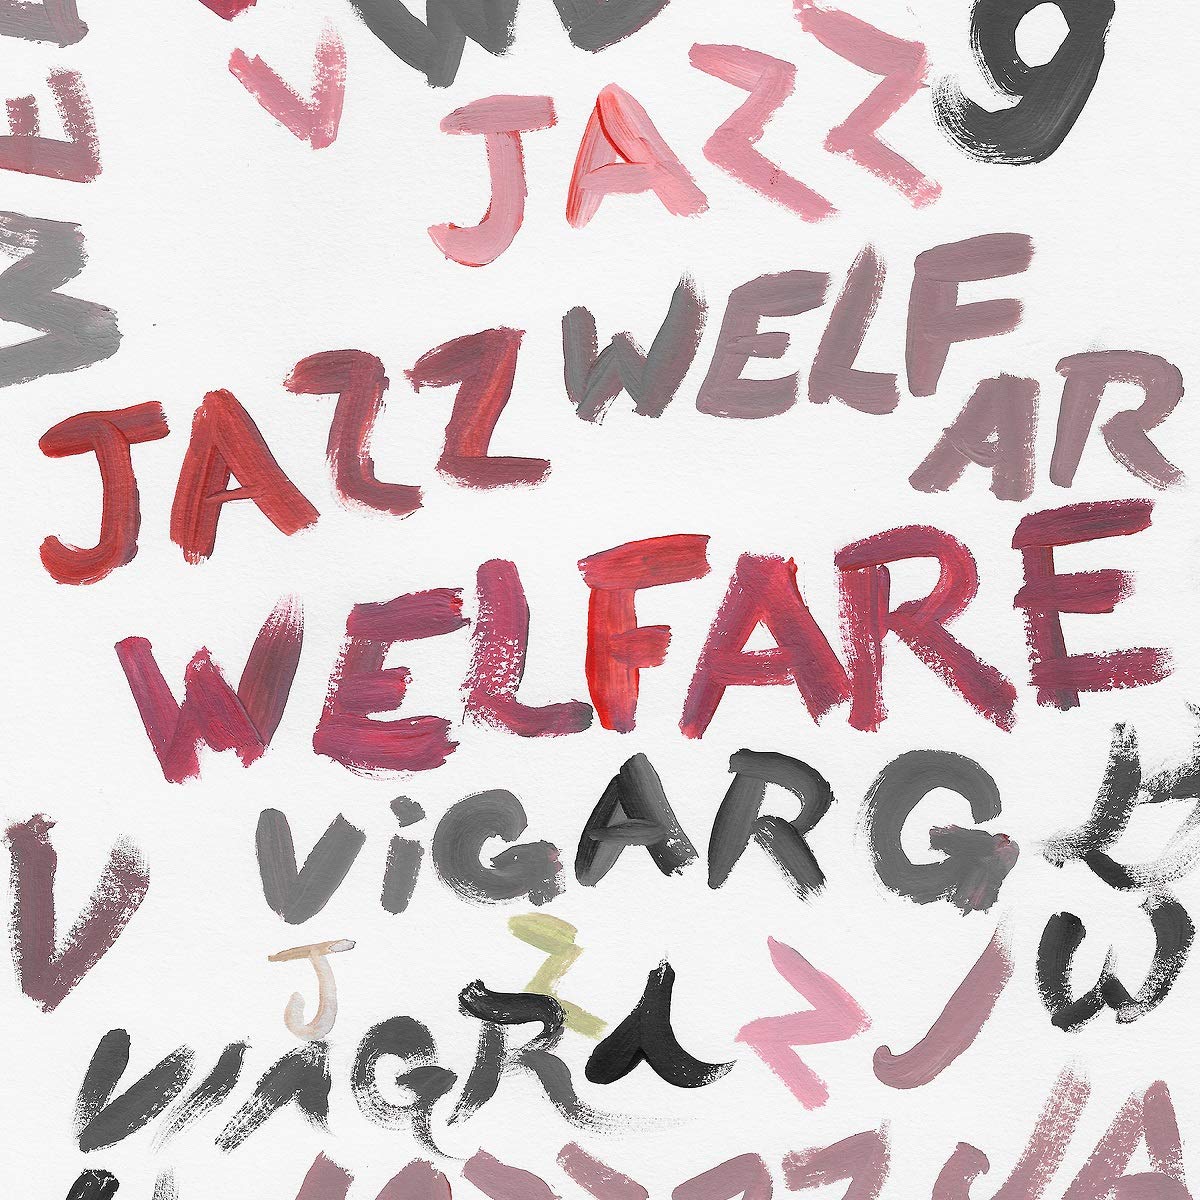 Viagra Boys "Welfare Jazz" Deluxe Lp